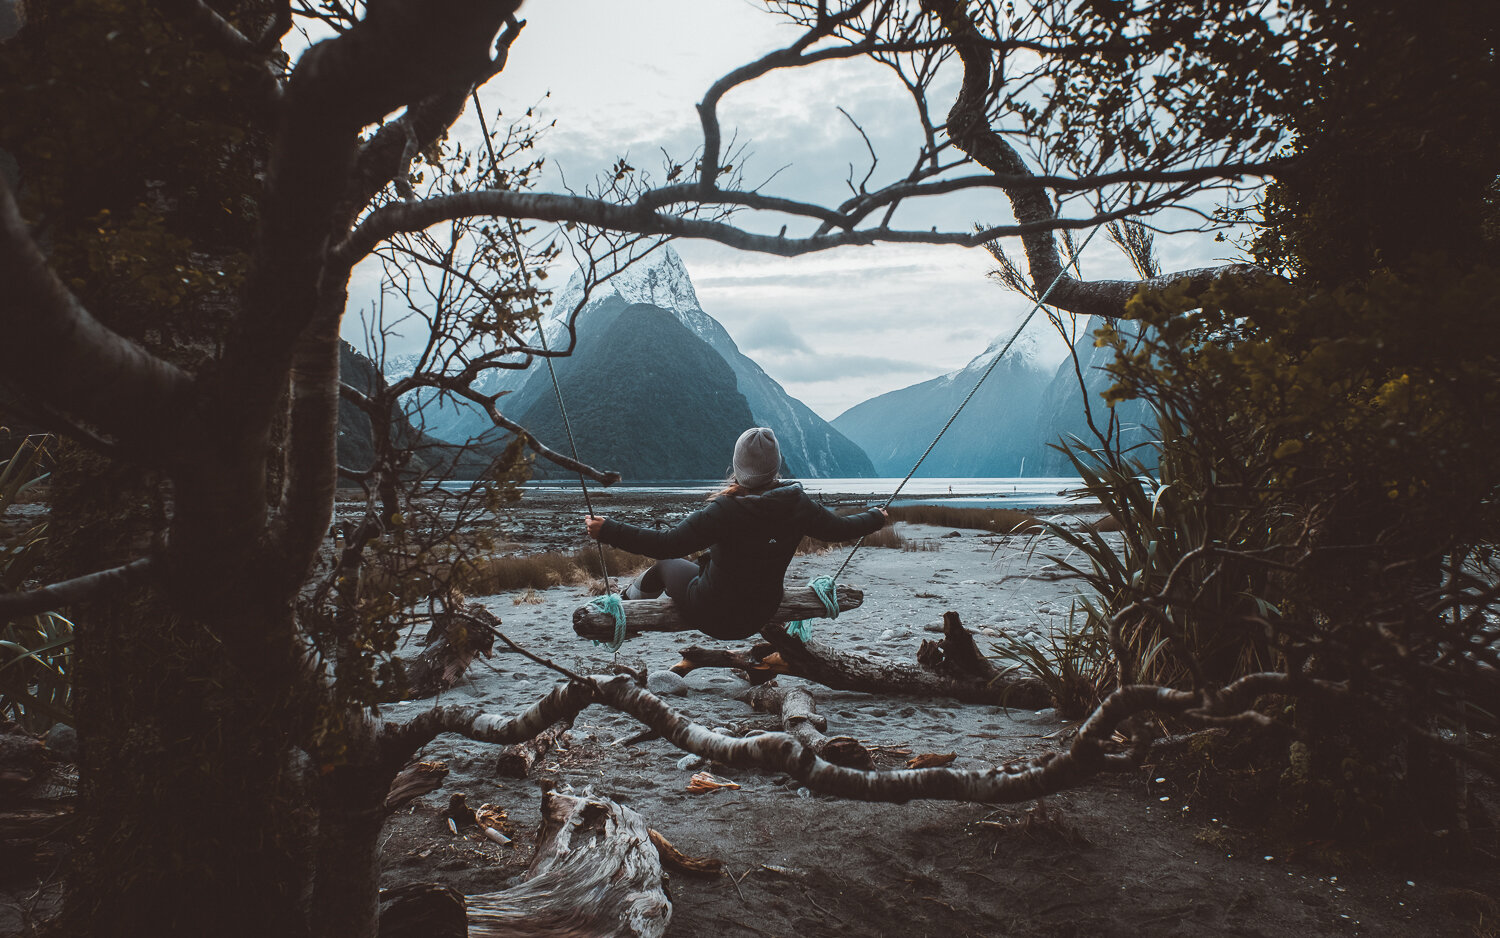 Milford Sound, New Zealand 2018